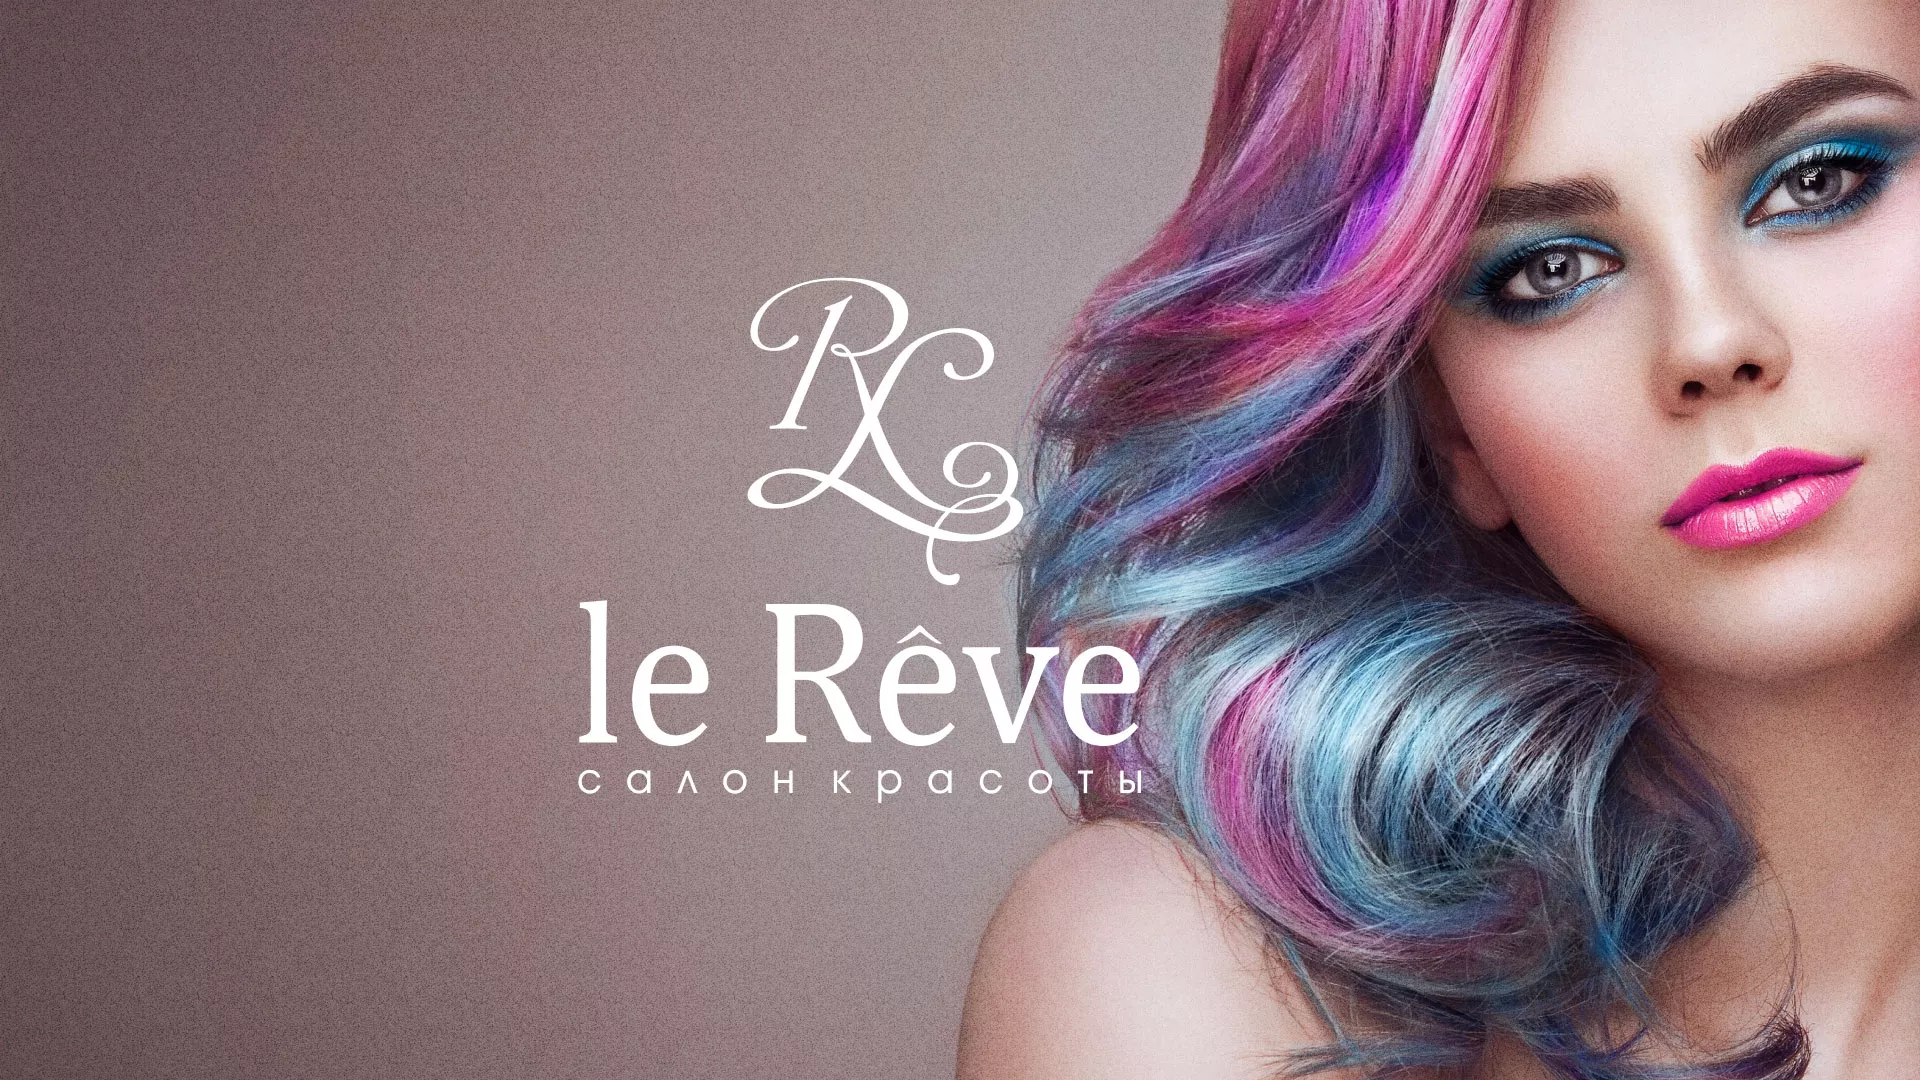 Создание сайта для салона красоты «Le Reve» в Барнауле